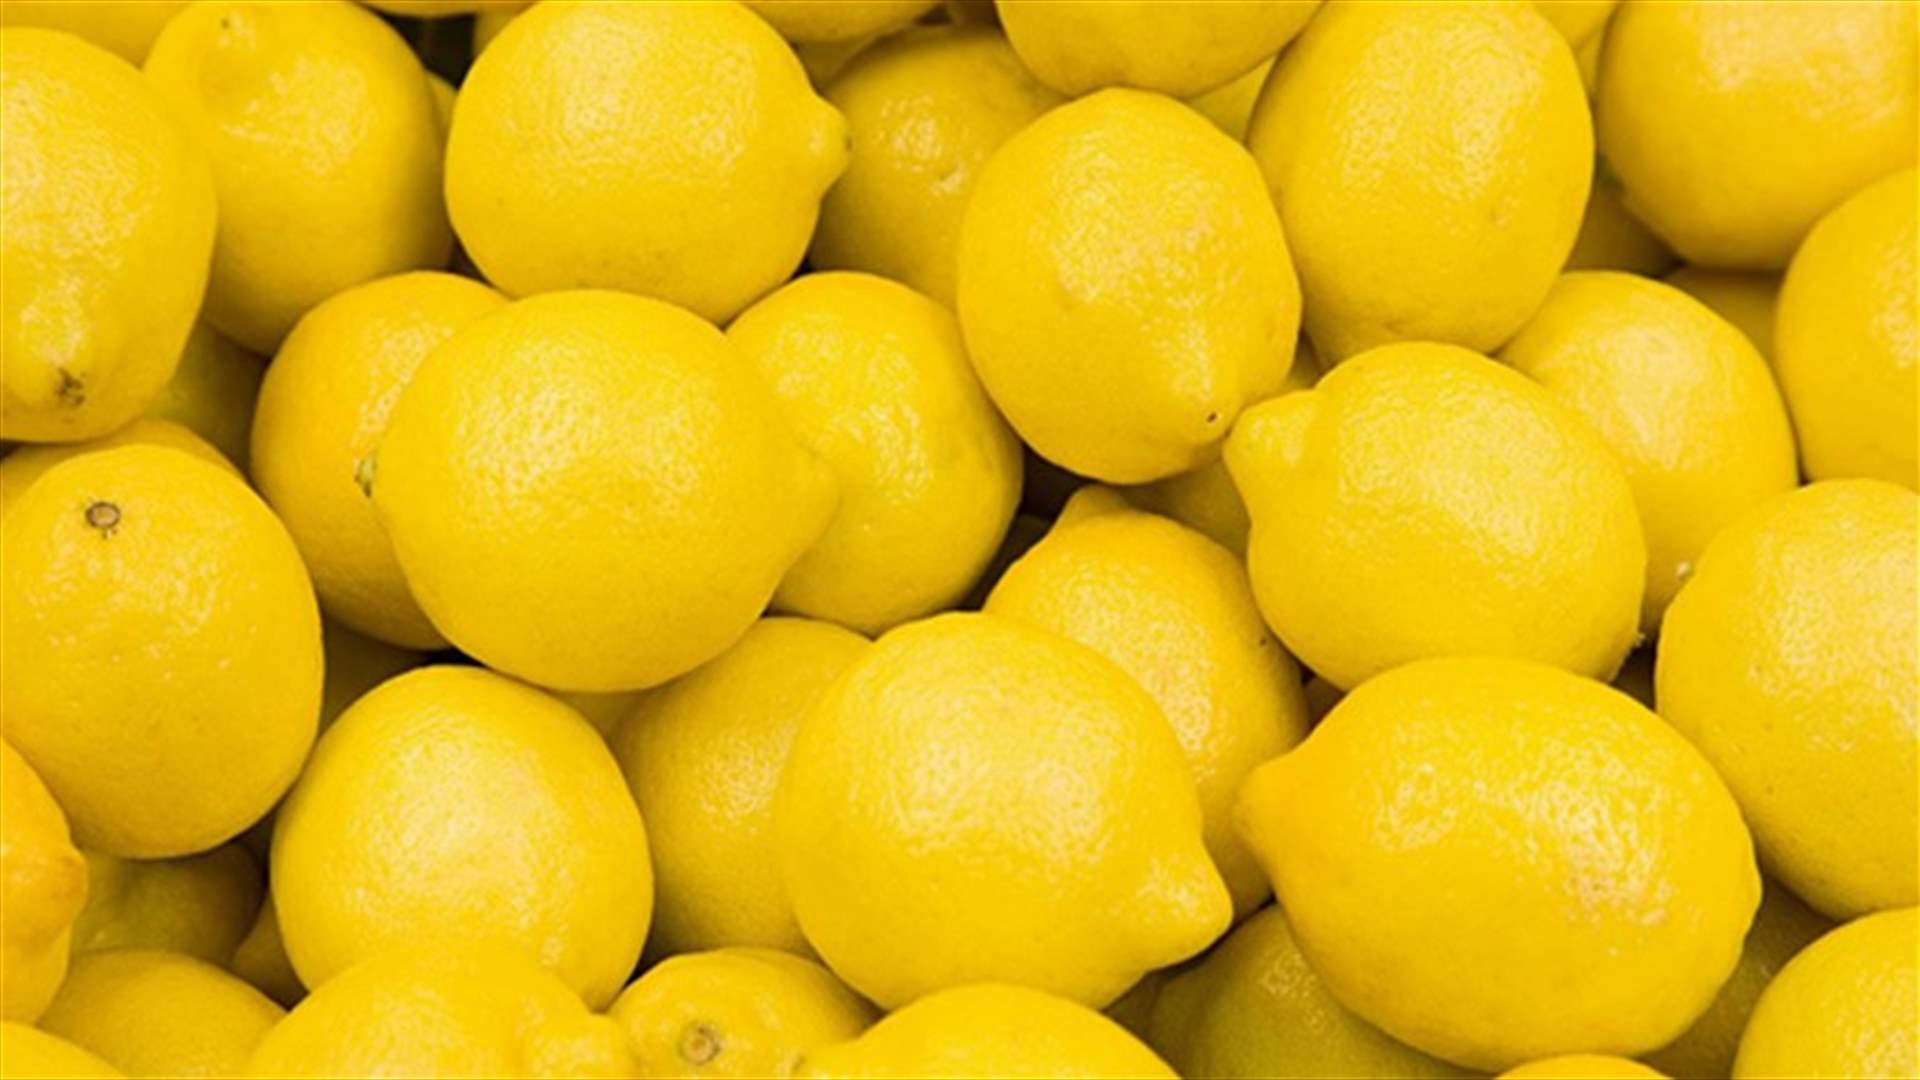 [PHOTO] Breast Cancer Indicators Explained Through Lemons